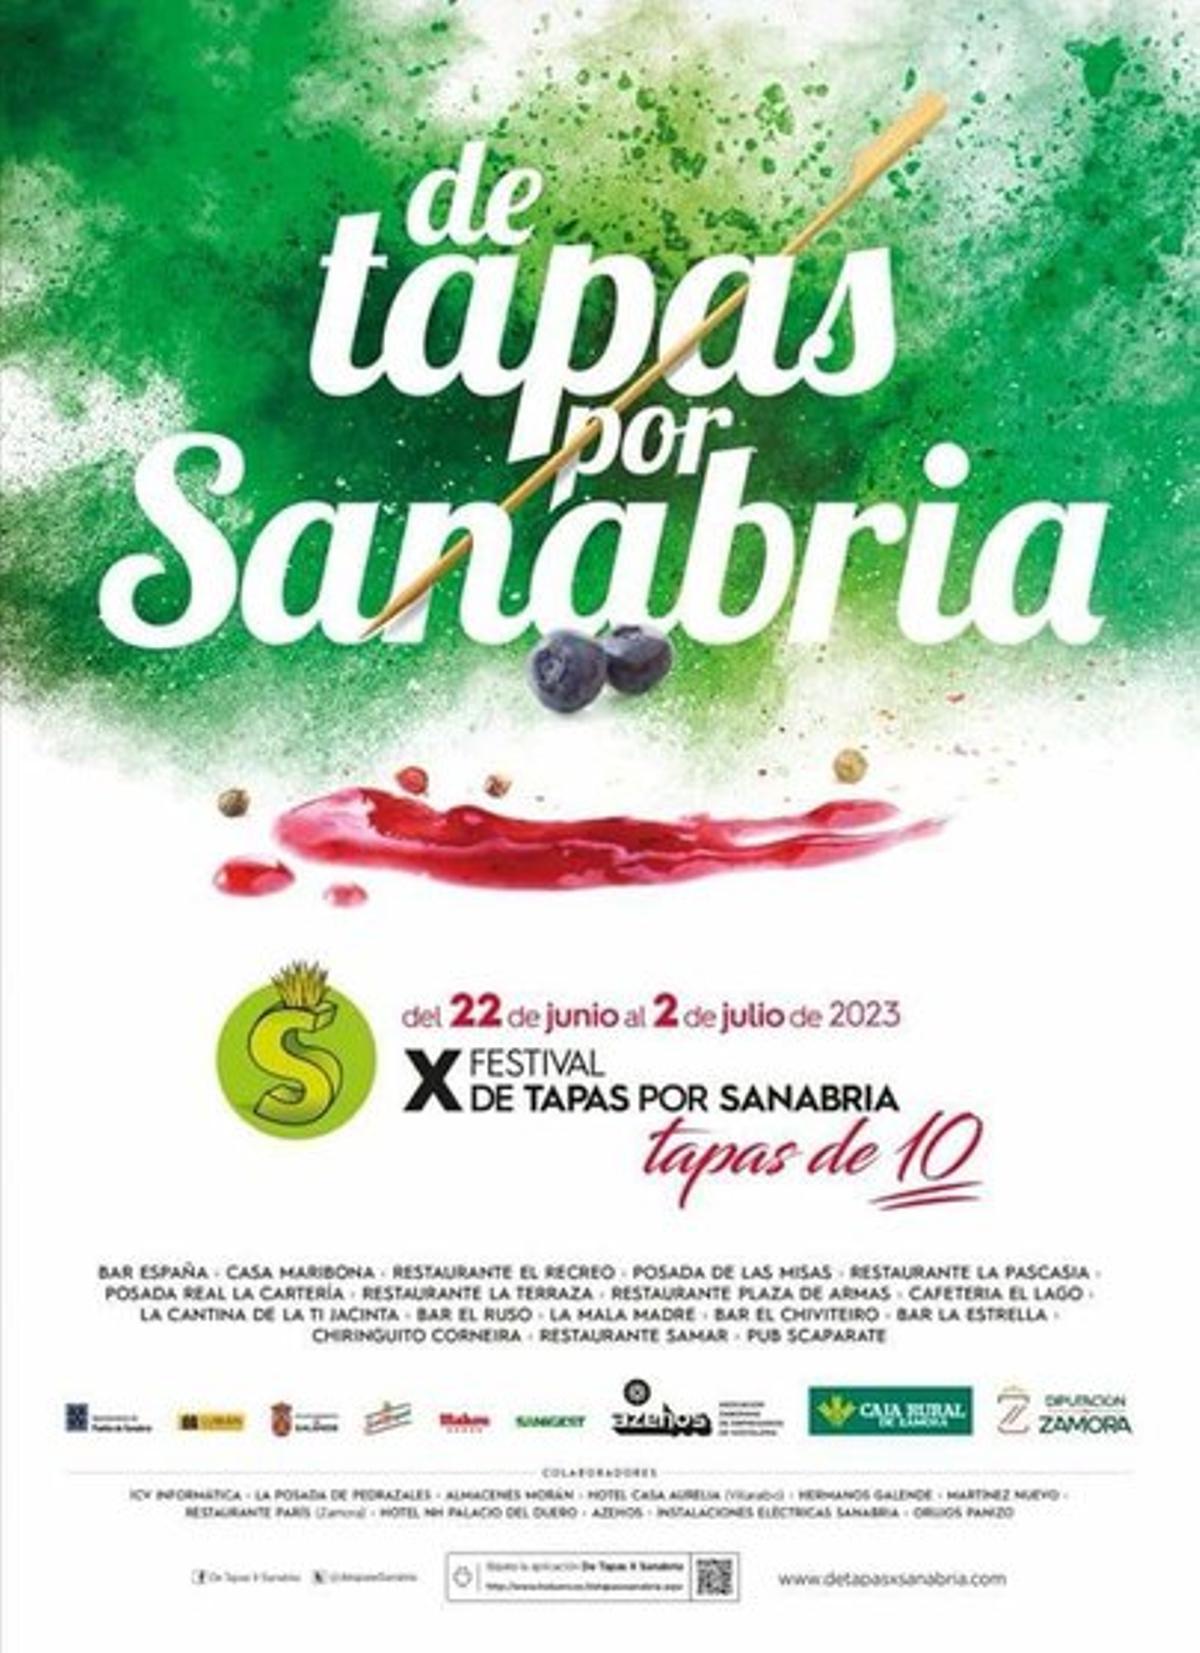 Dieciséis establecimientos hosteleros participan en el X Festival ‘De tapas por Sanabria’.